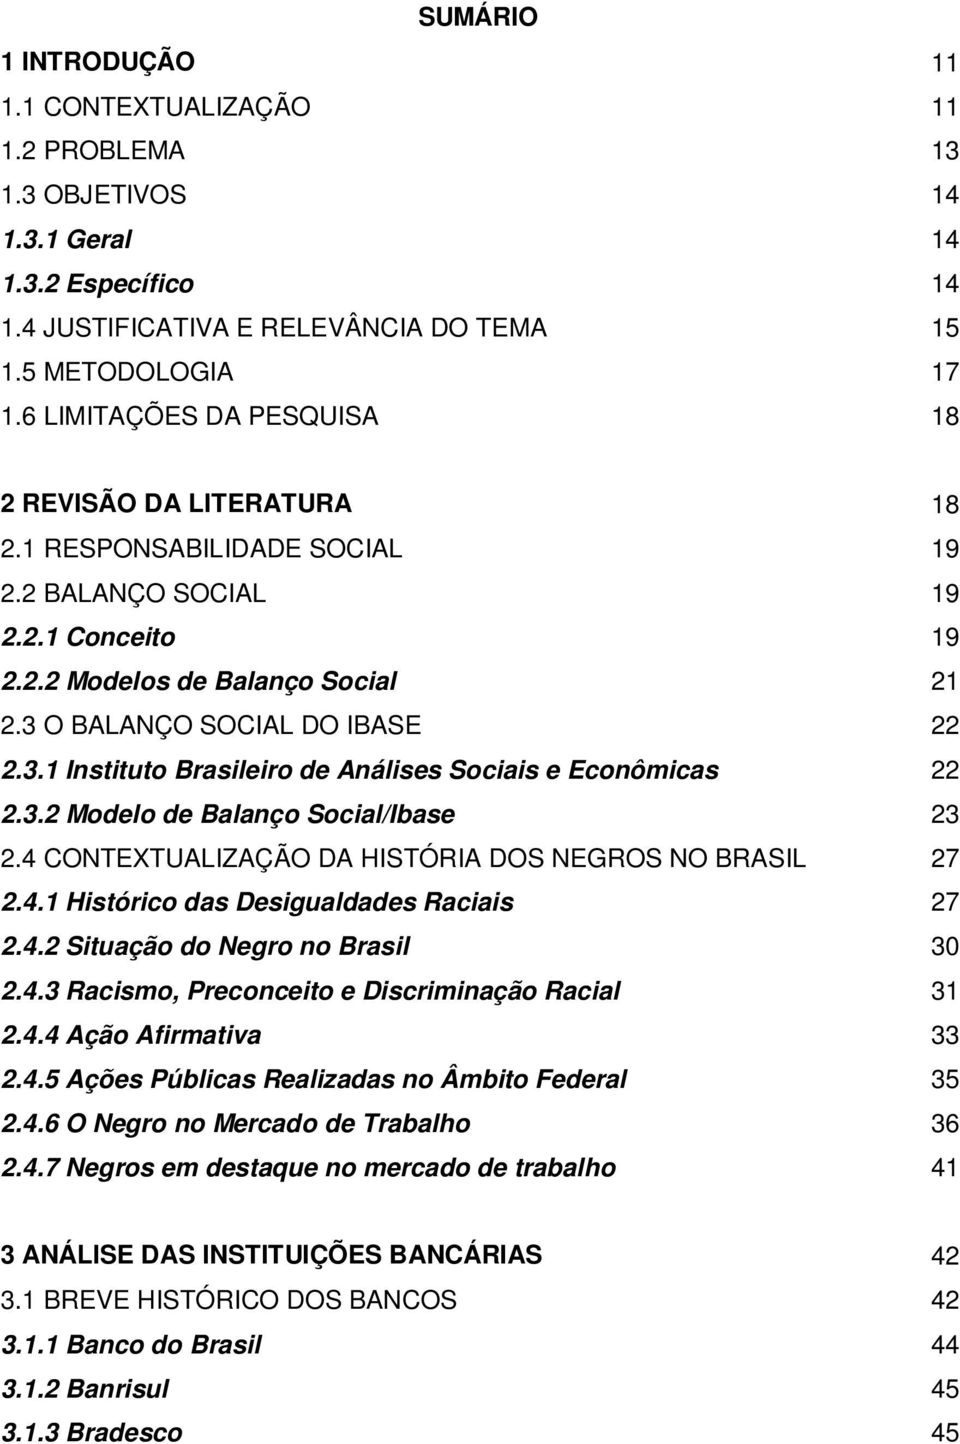 O BALANÇO SOCIAL DO IBASE 22 2.3.1 Instituto Brasileiro de Análises Sociais e Econômicas 22 2.3.2 Modelo de Balanço Social/Ibase 23 2.4 CONTEXTUALIZAÇÃO DA HISTÓRIA DOS NEGROS NO BRASIL 27 2.4.1 Histórico das Desigualdades Raciais 27 2.